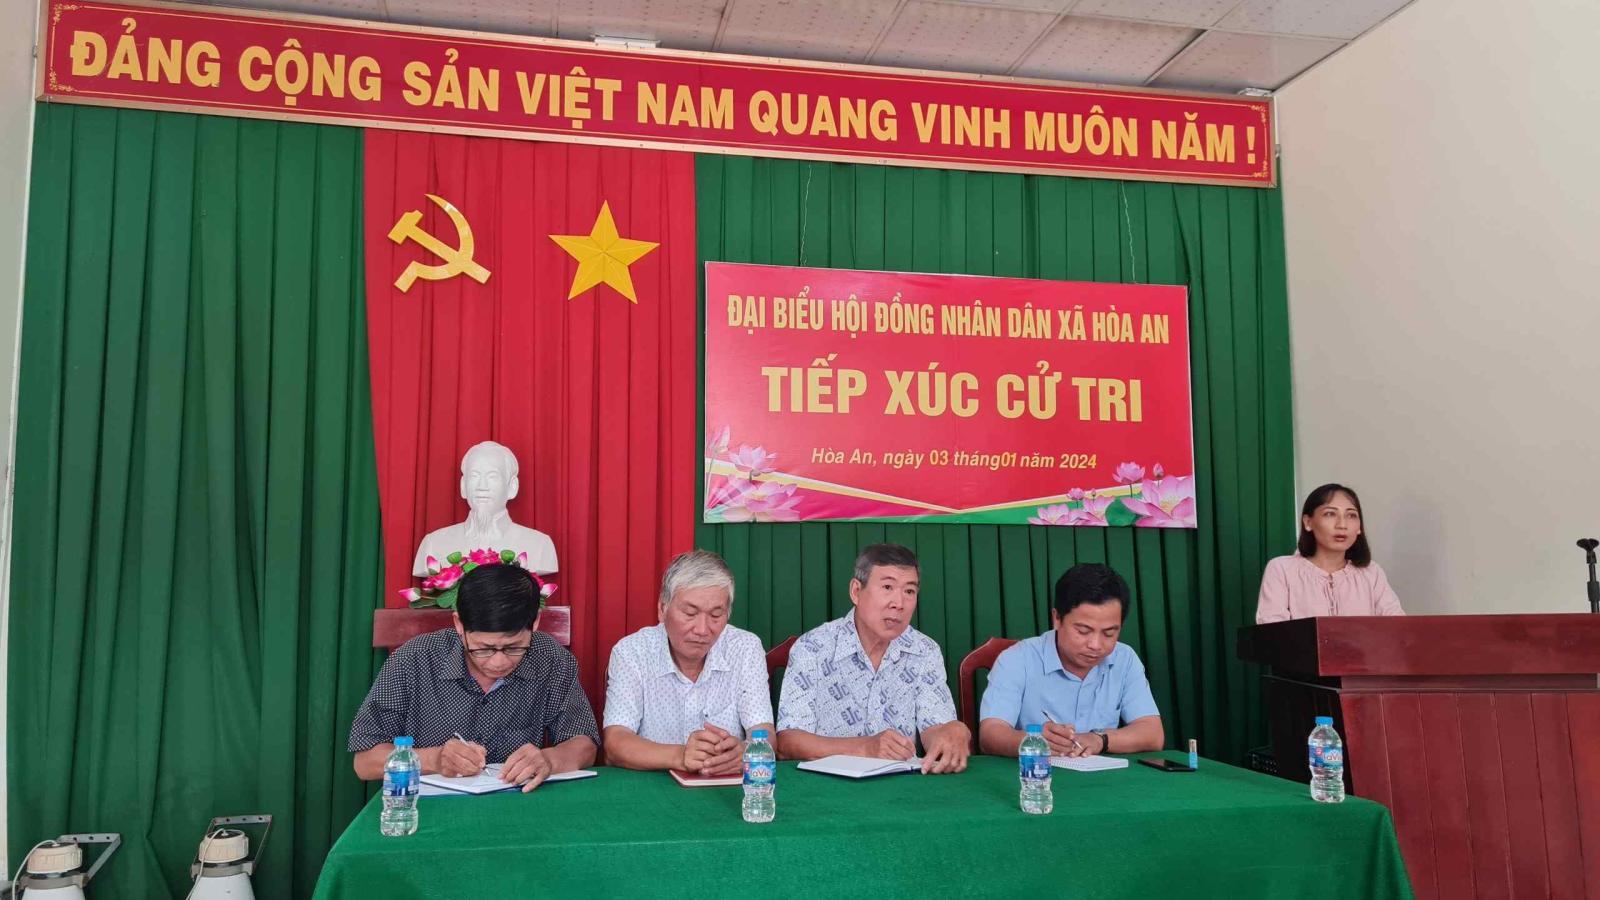 Đại biểu hội đồng nhân dân xã tiếp xúc cử tri xã Hòa An sau kỳ họp Hội đồng nhân dân lần thứ bảy